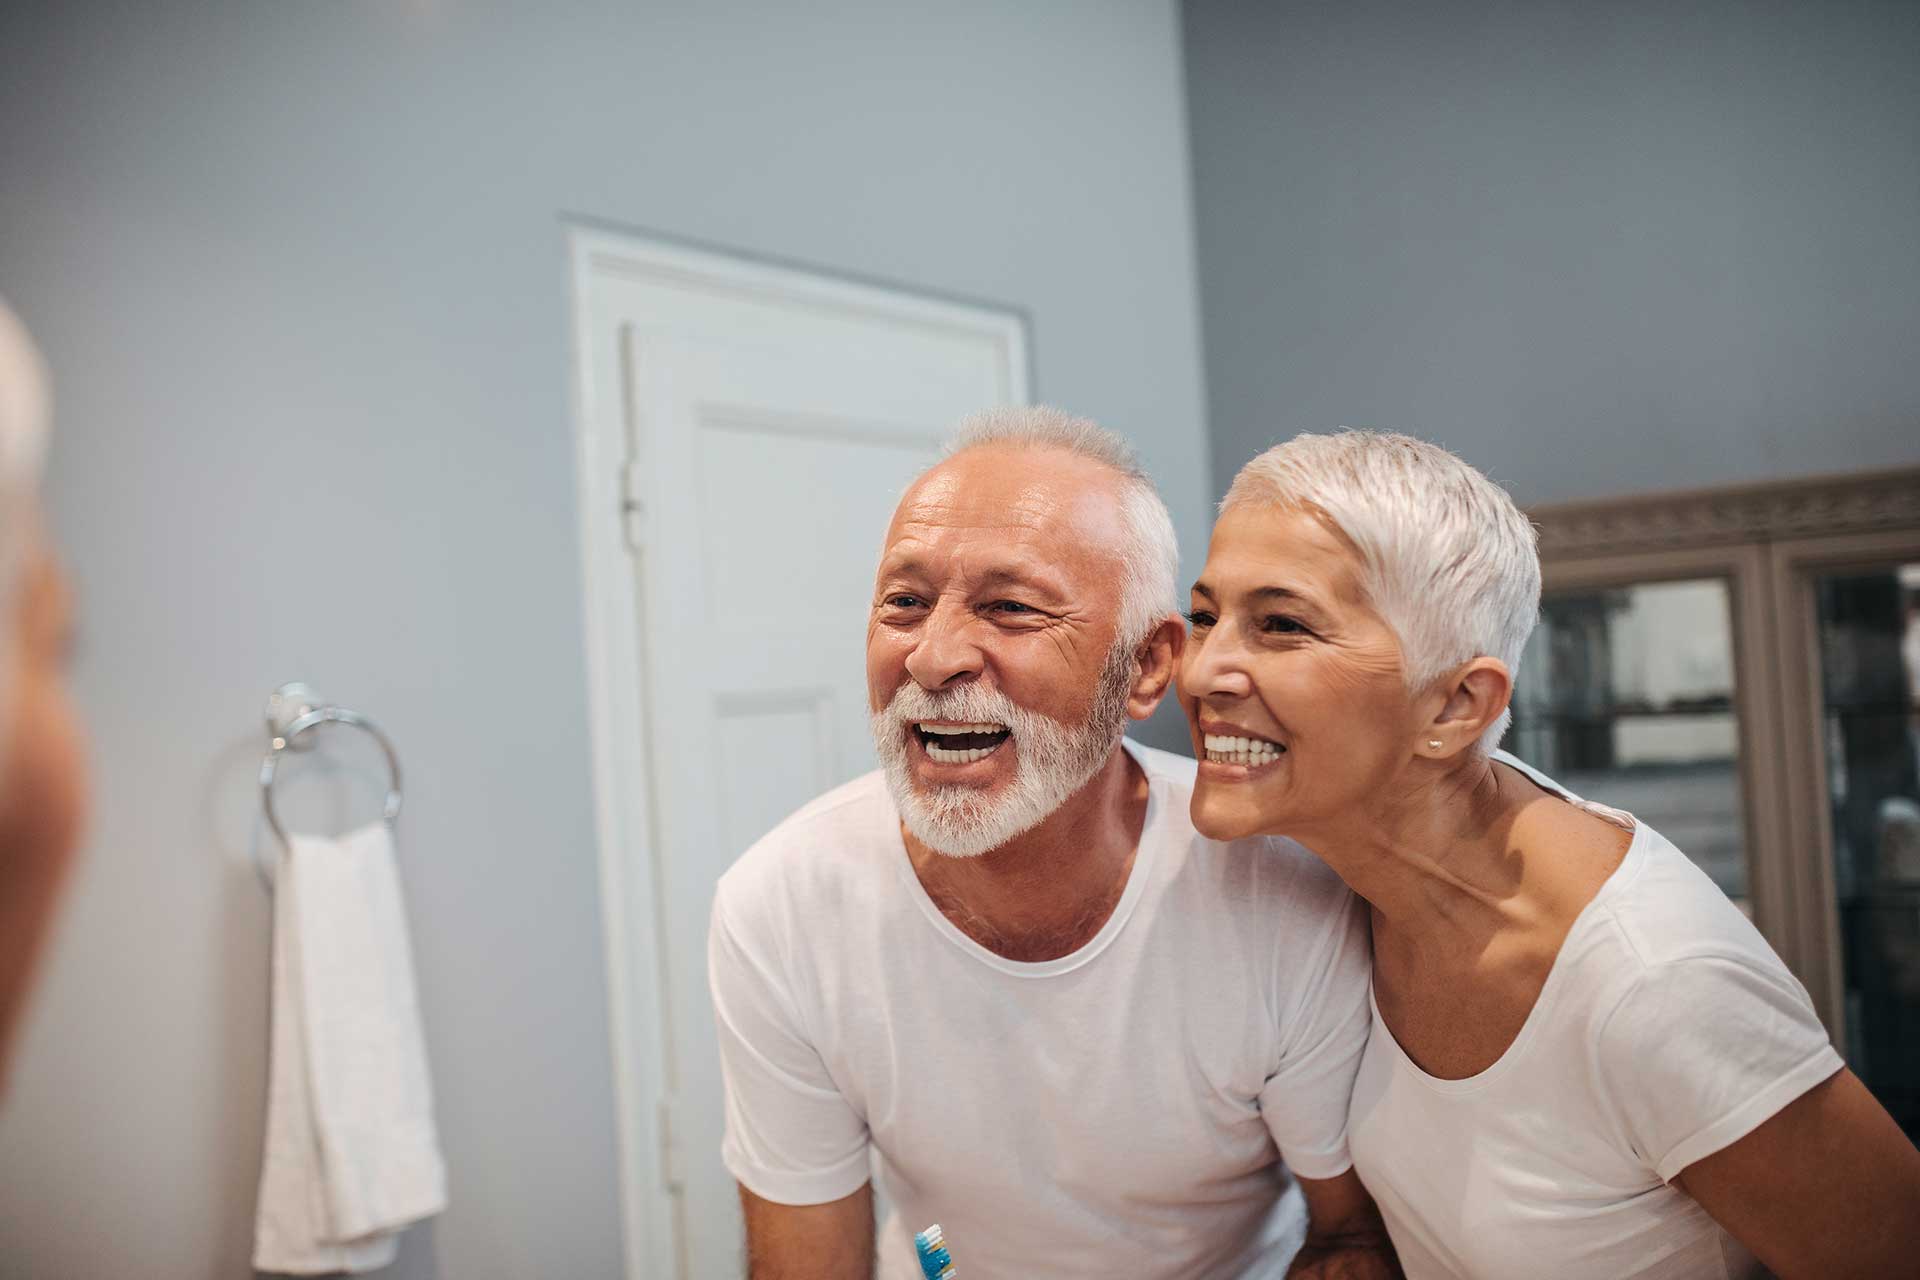 Što trebate znati o stomatološkoj skrbi za starije osobe